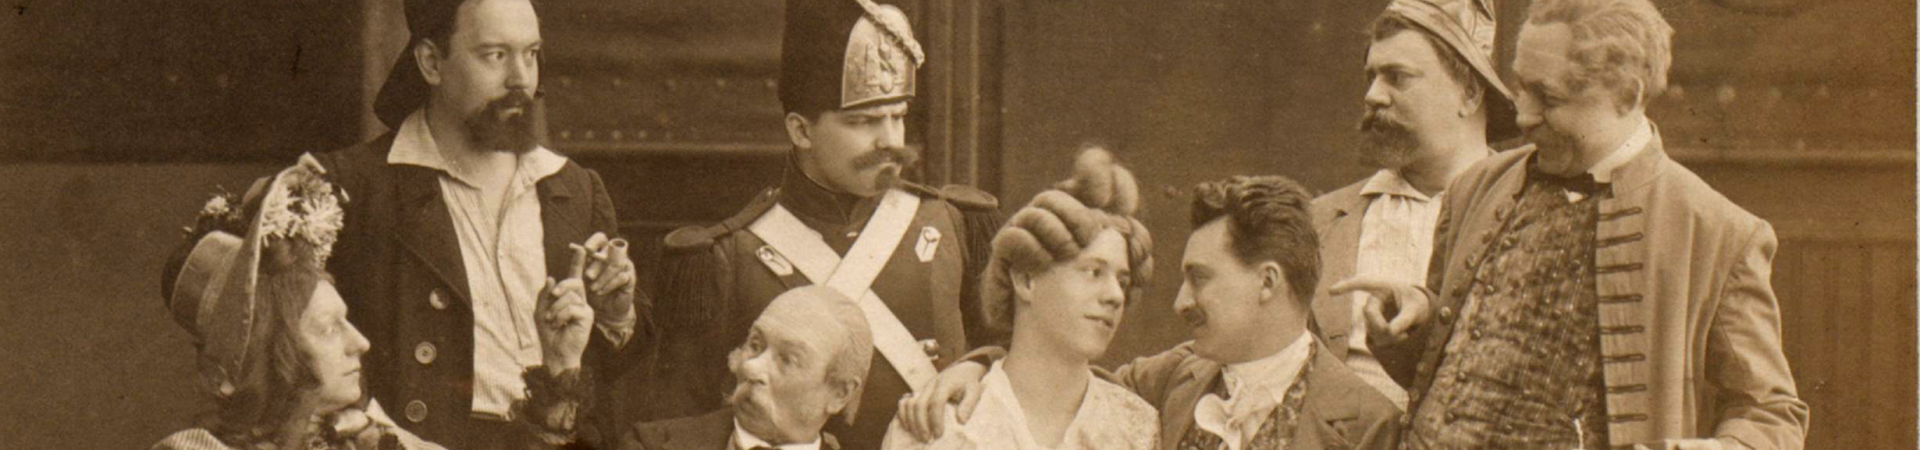 Us der Hexemächerzick - Divertissementchen 1906 - Ensemble in historischen Kostümen